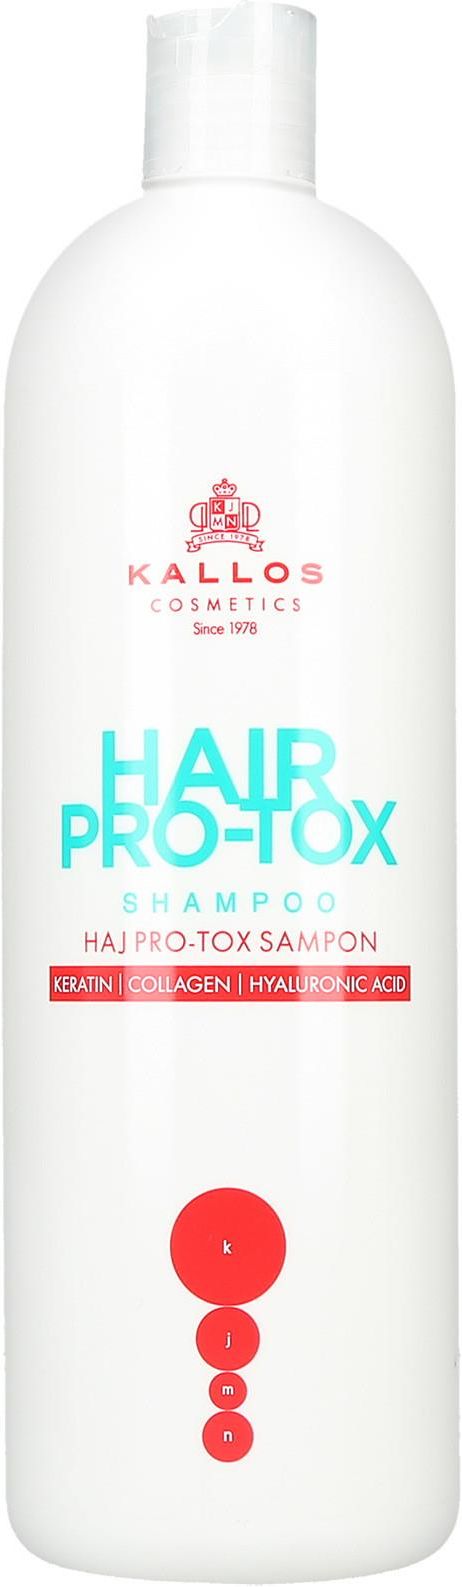 kallos kjmn luminous shine szampon do włosów wizaz